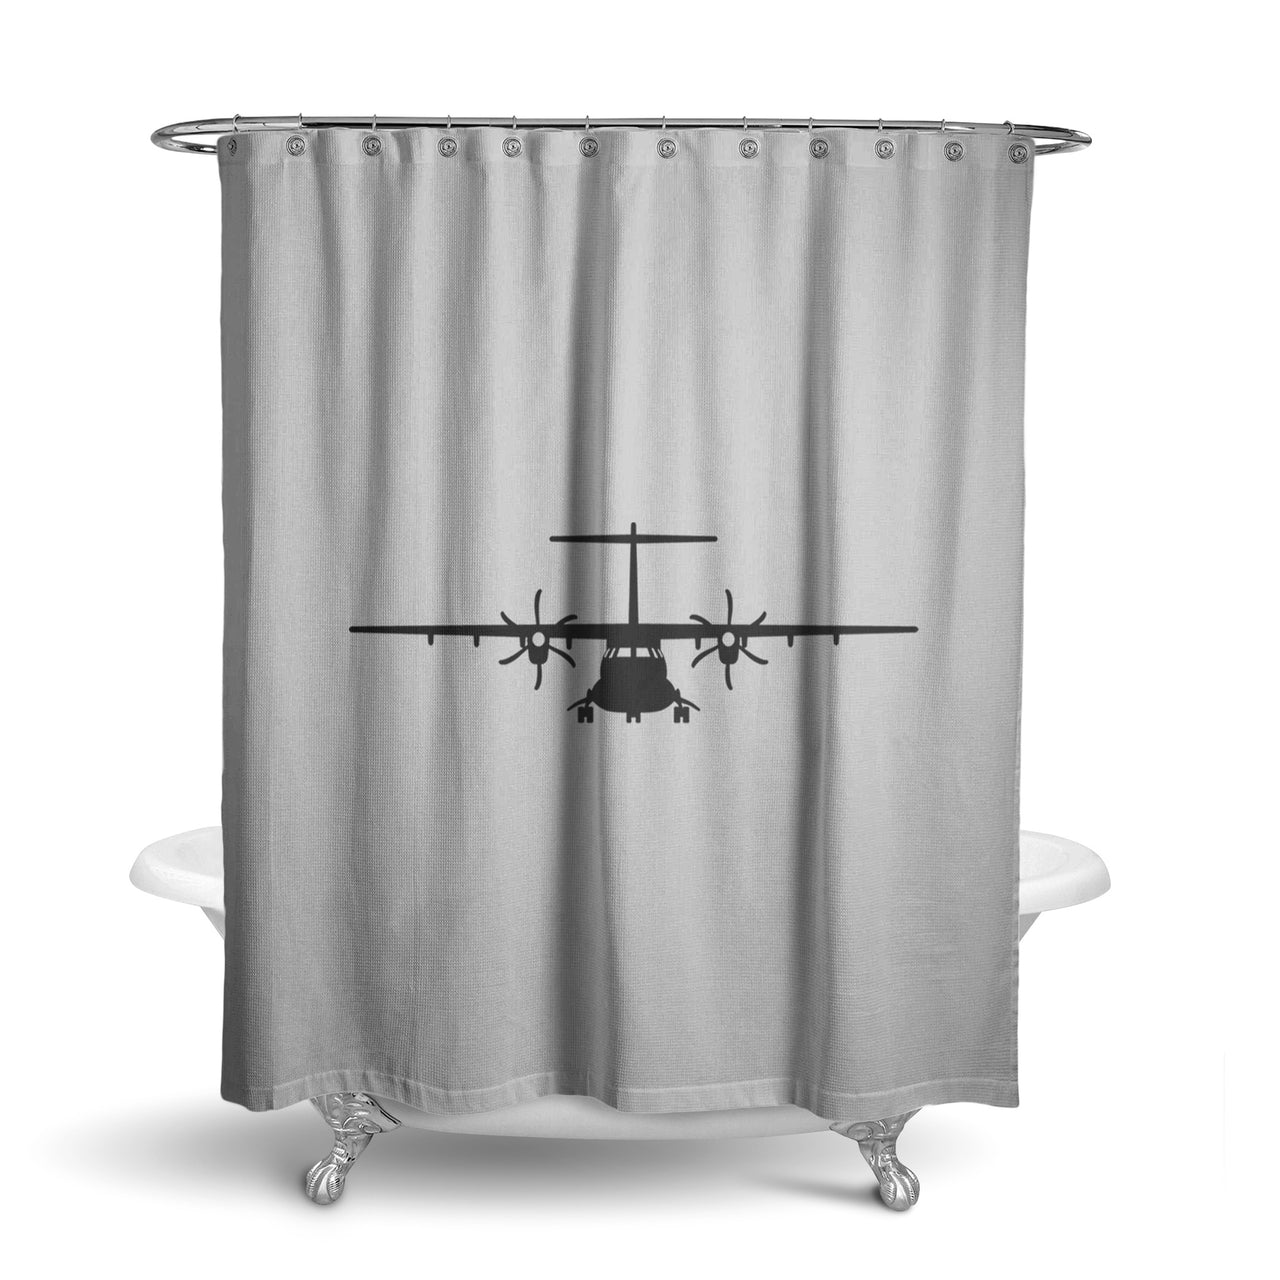 ATR-72 Silhouette Designed Shower Curtains